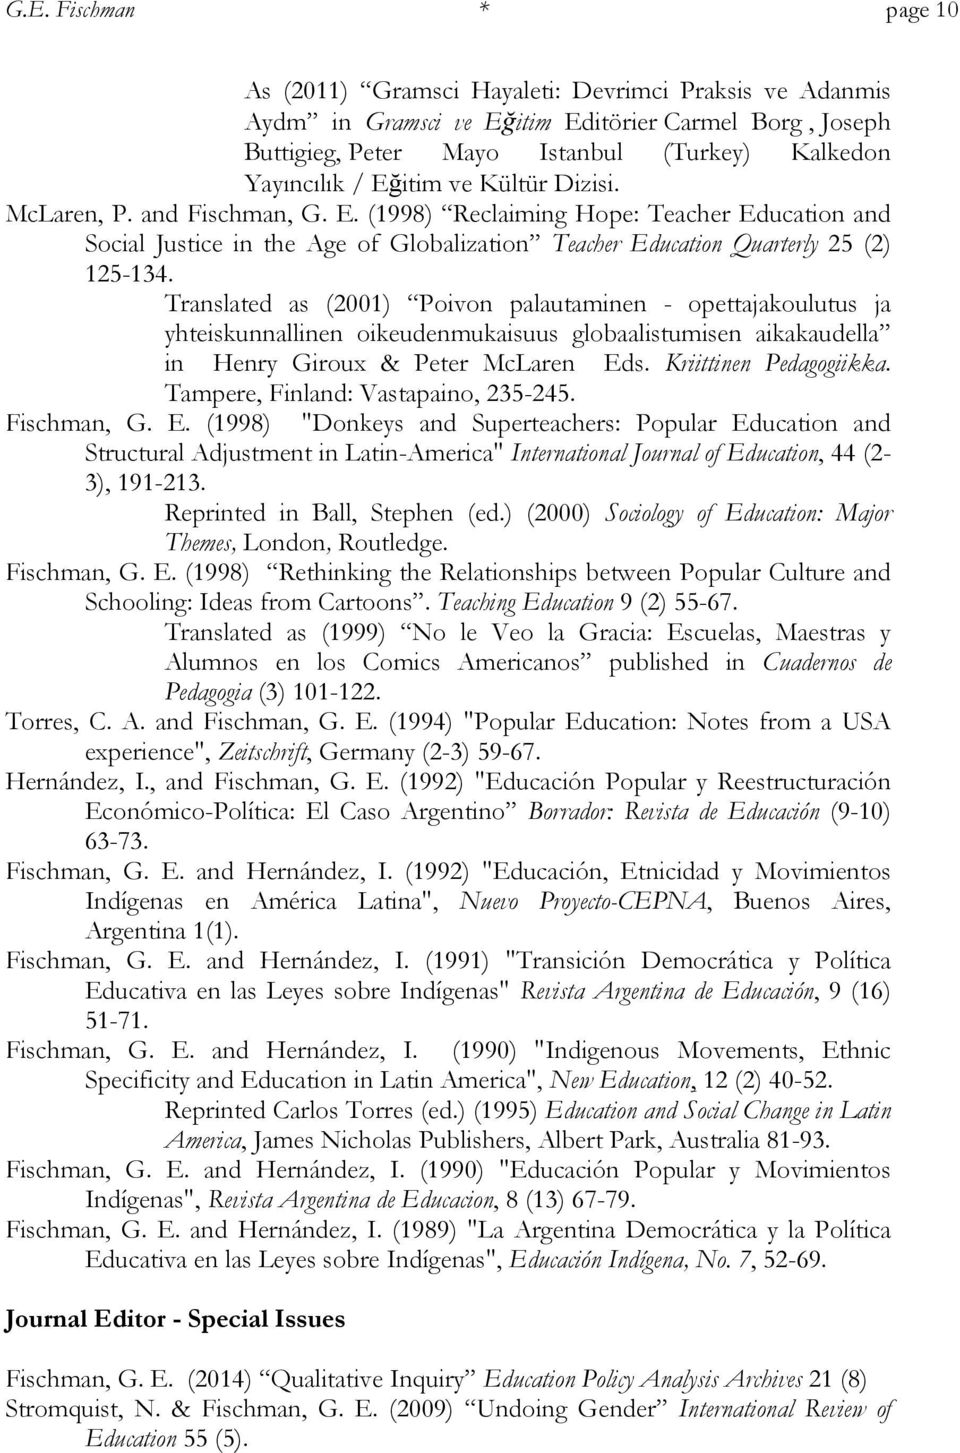 Translated as (2001) Poivon palautaminen - opettajakoulutus ja yhteiskunnallinen oikeudenmukaisuus globaalistumisen aikakaudella in Henry Giroux & Peter McLaren Eds. Kriittinen Pedagogiikka.